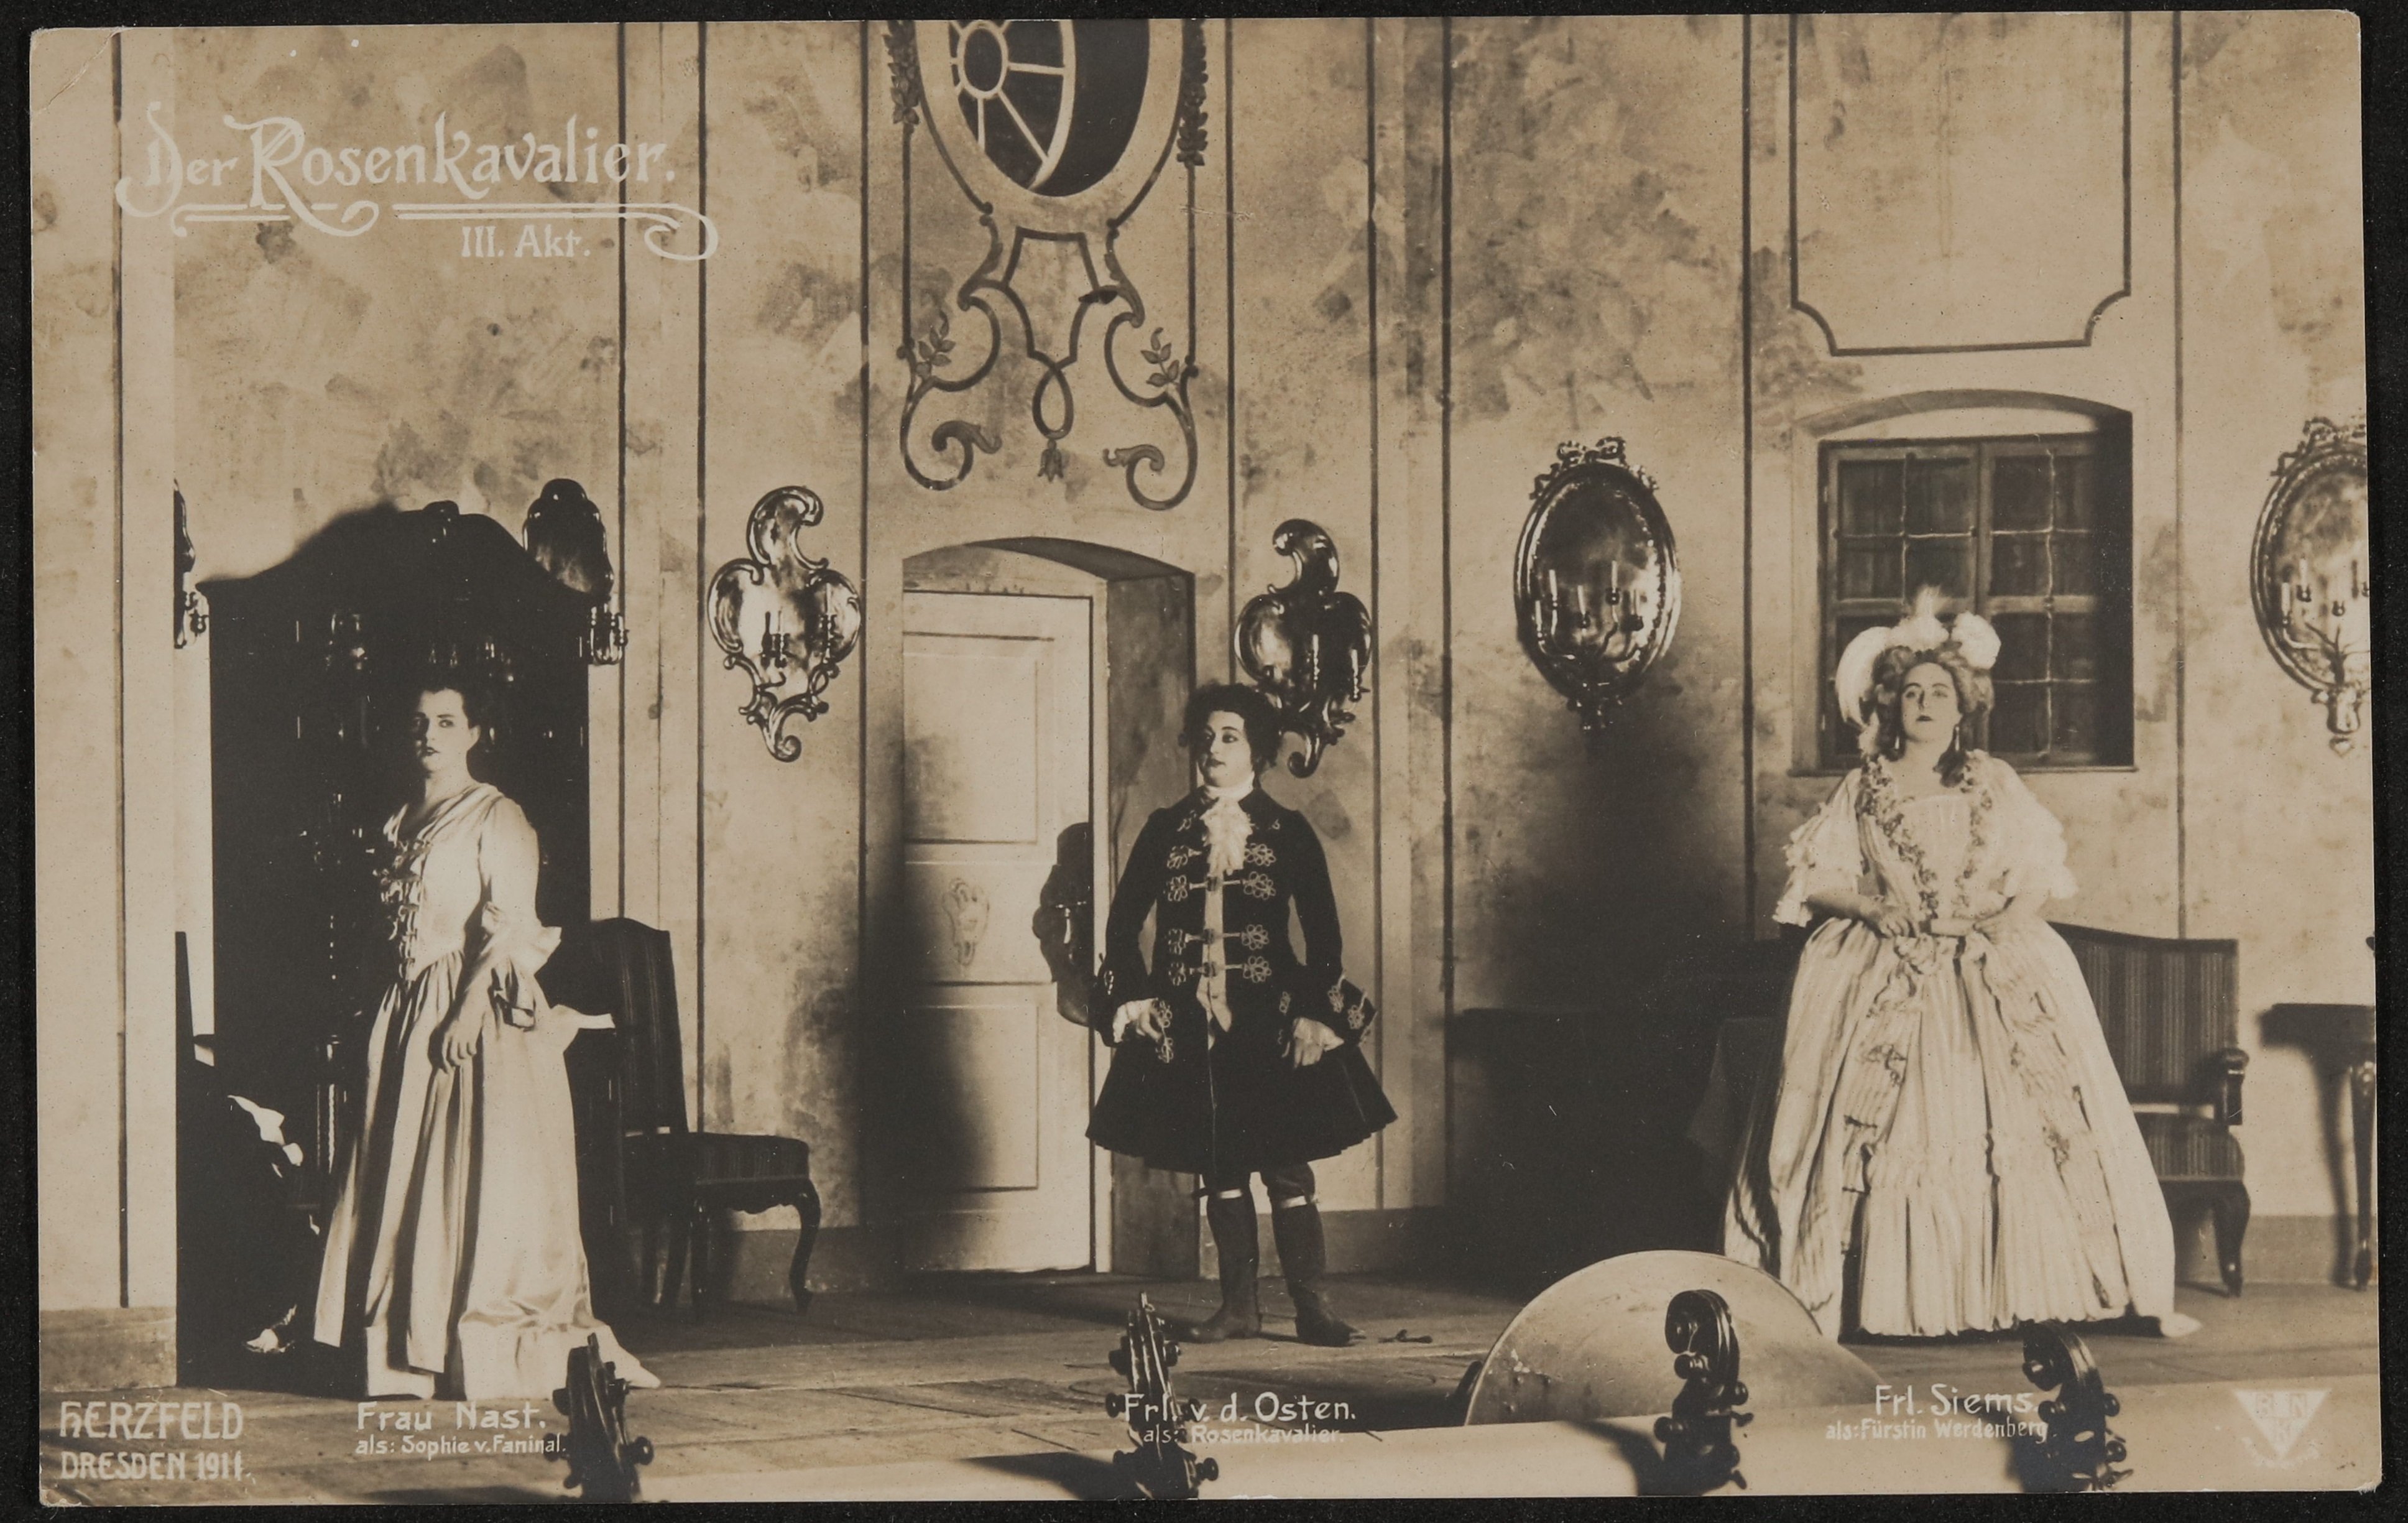 Szenenbild aus "Der Rosenkavalier", 3. Akt mit Siems, Nast und Osten in Dresden (Freies Deutsches Hochstift / Frankfurter Goethe-Museum CC BY-NC-SA)